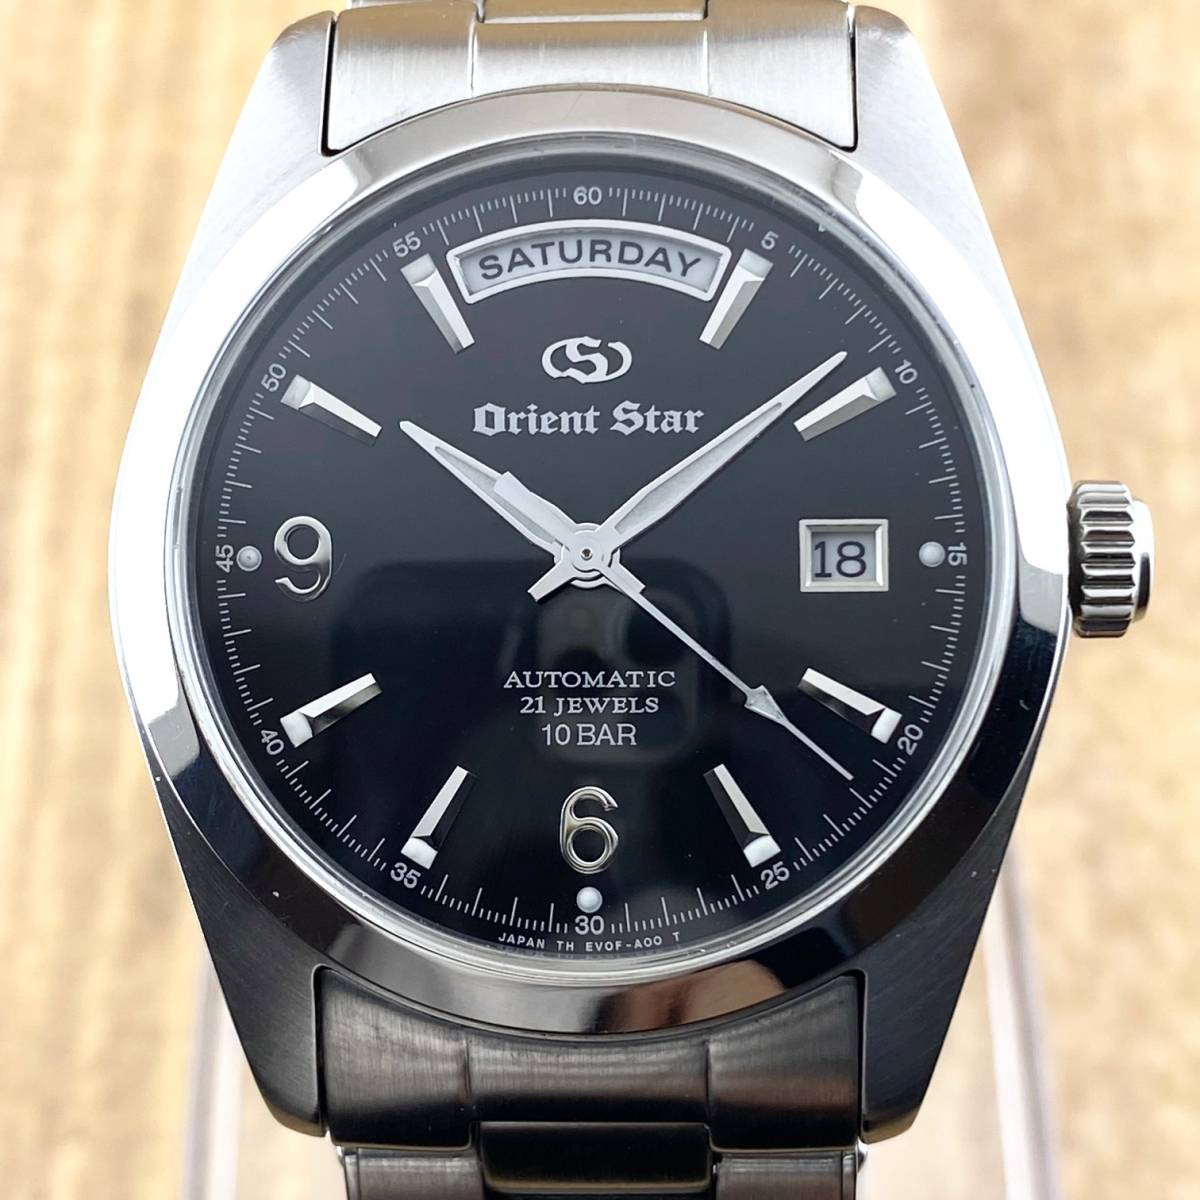 17900円通販値段 販売店舗 オリエントスター 腕時計 メンズ 時計